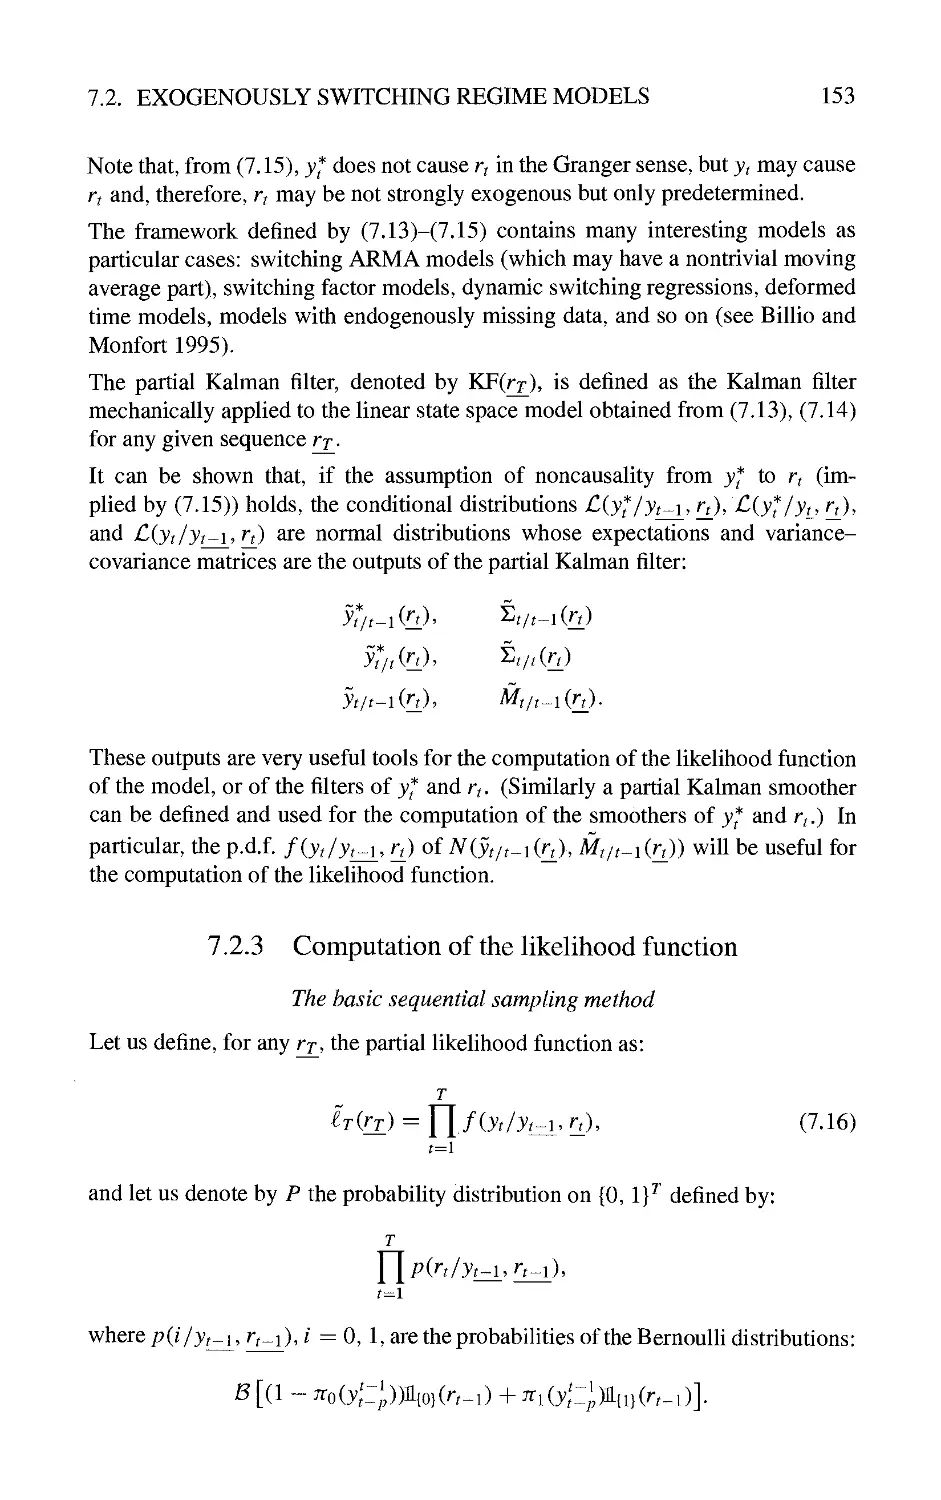 7.2.3 Computation of the likelihood function